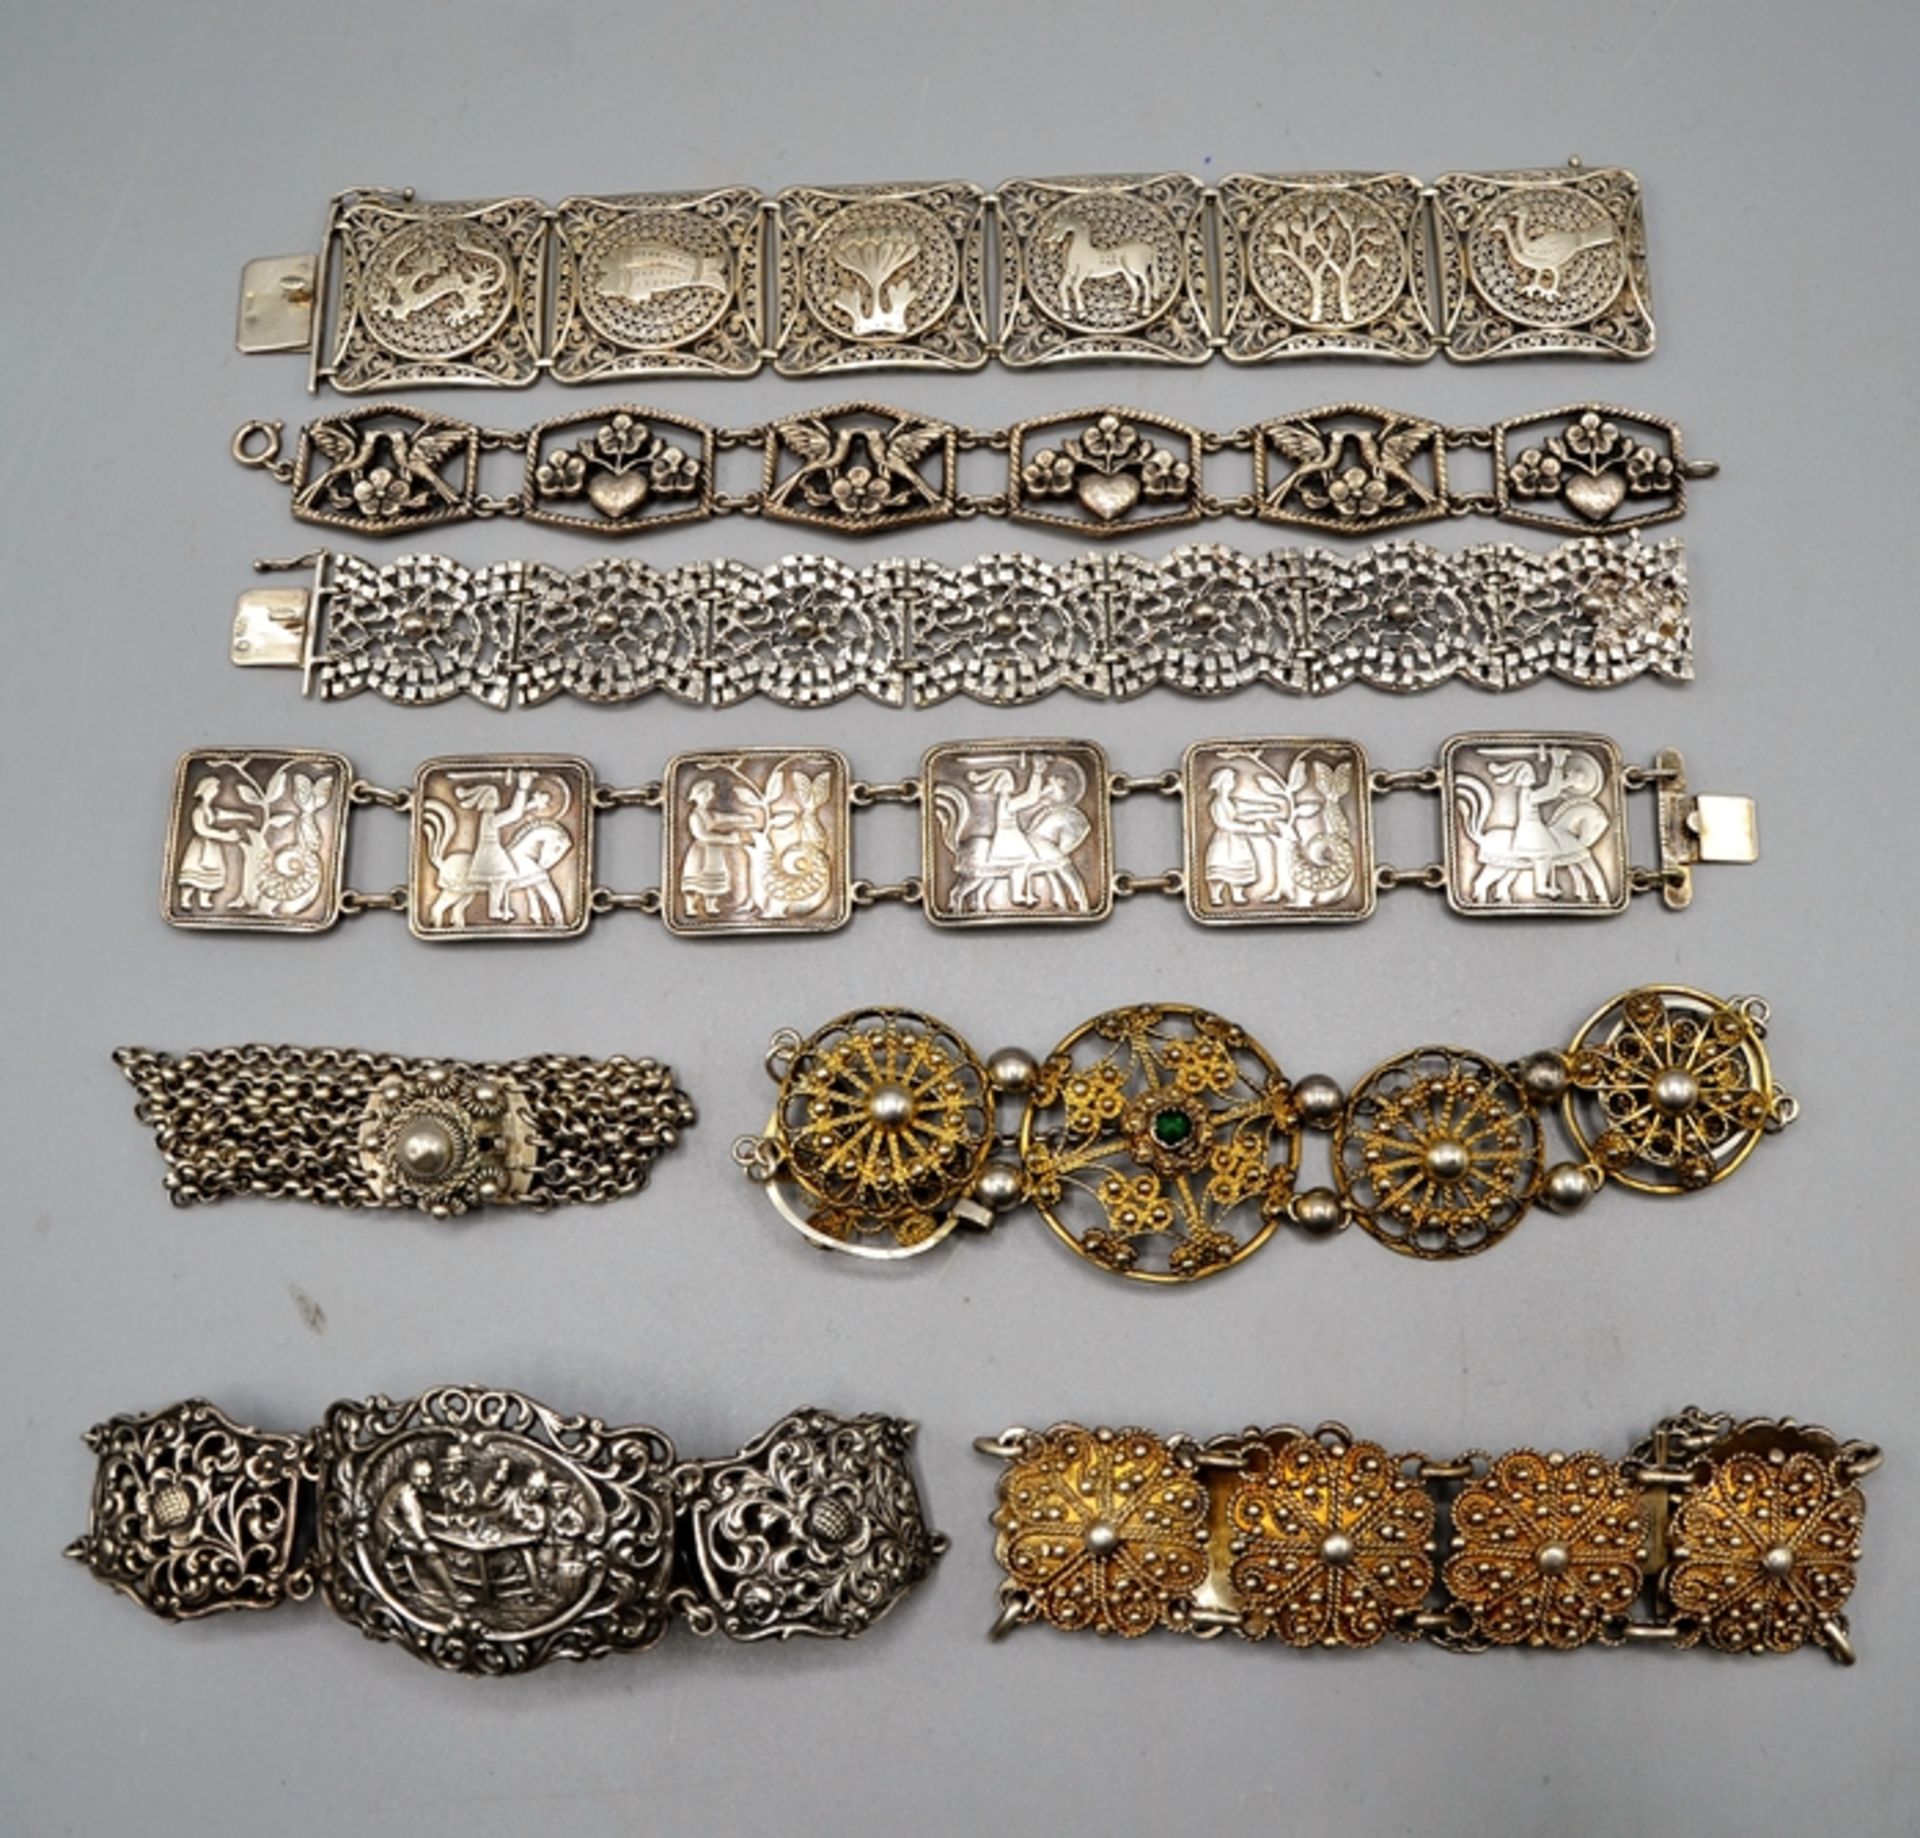 Armbänder Silberarmbänder Trachtenschmuck überw. Silber 8 St., 7 davon Silber gepunzt, zus. 257 g